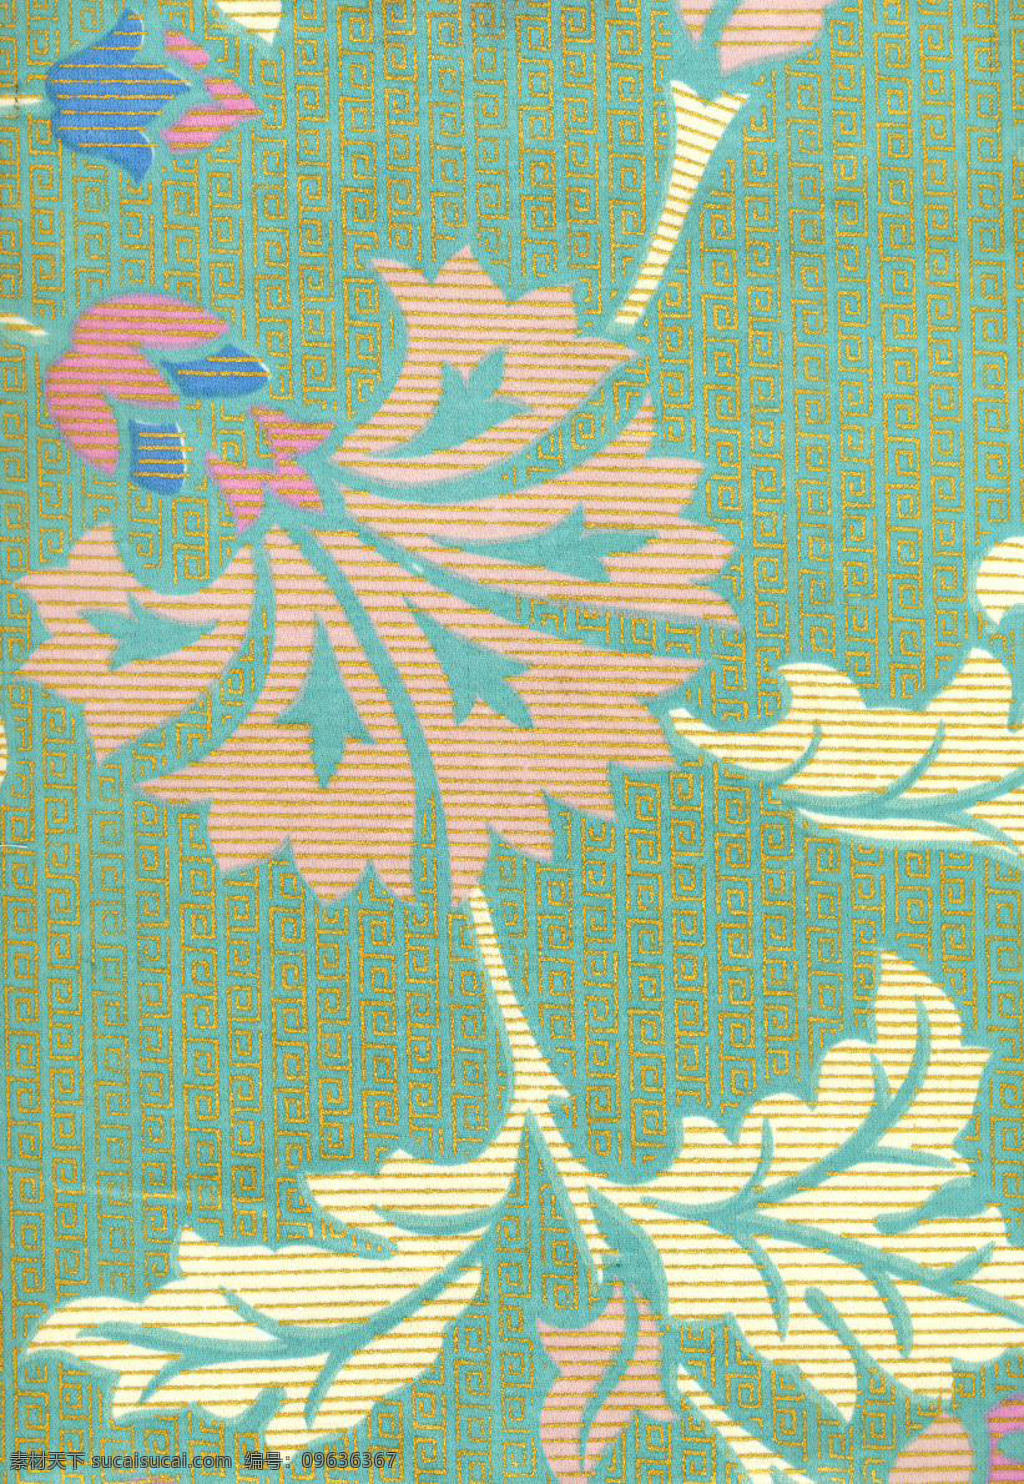 现代 简约 蓝色 格子 壁纸 图案 壁纸图案 粉色花朵 黄色树叶 灰色底纹